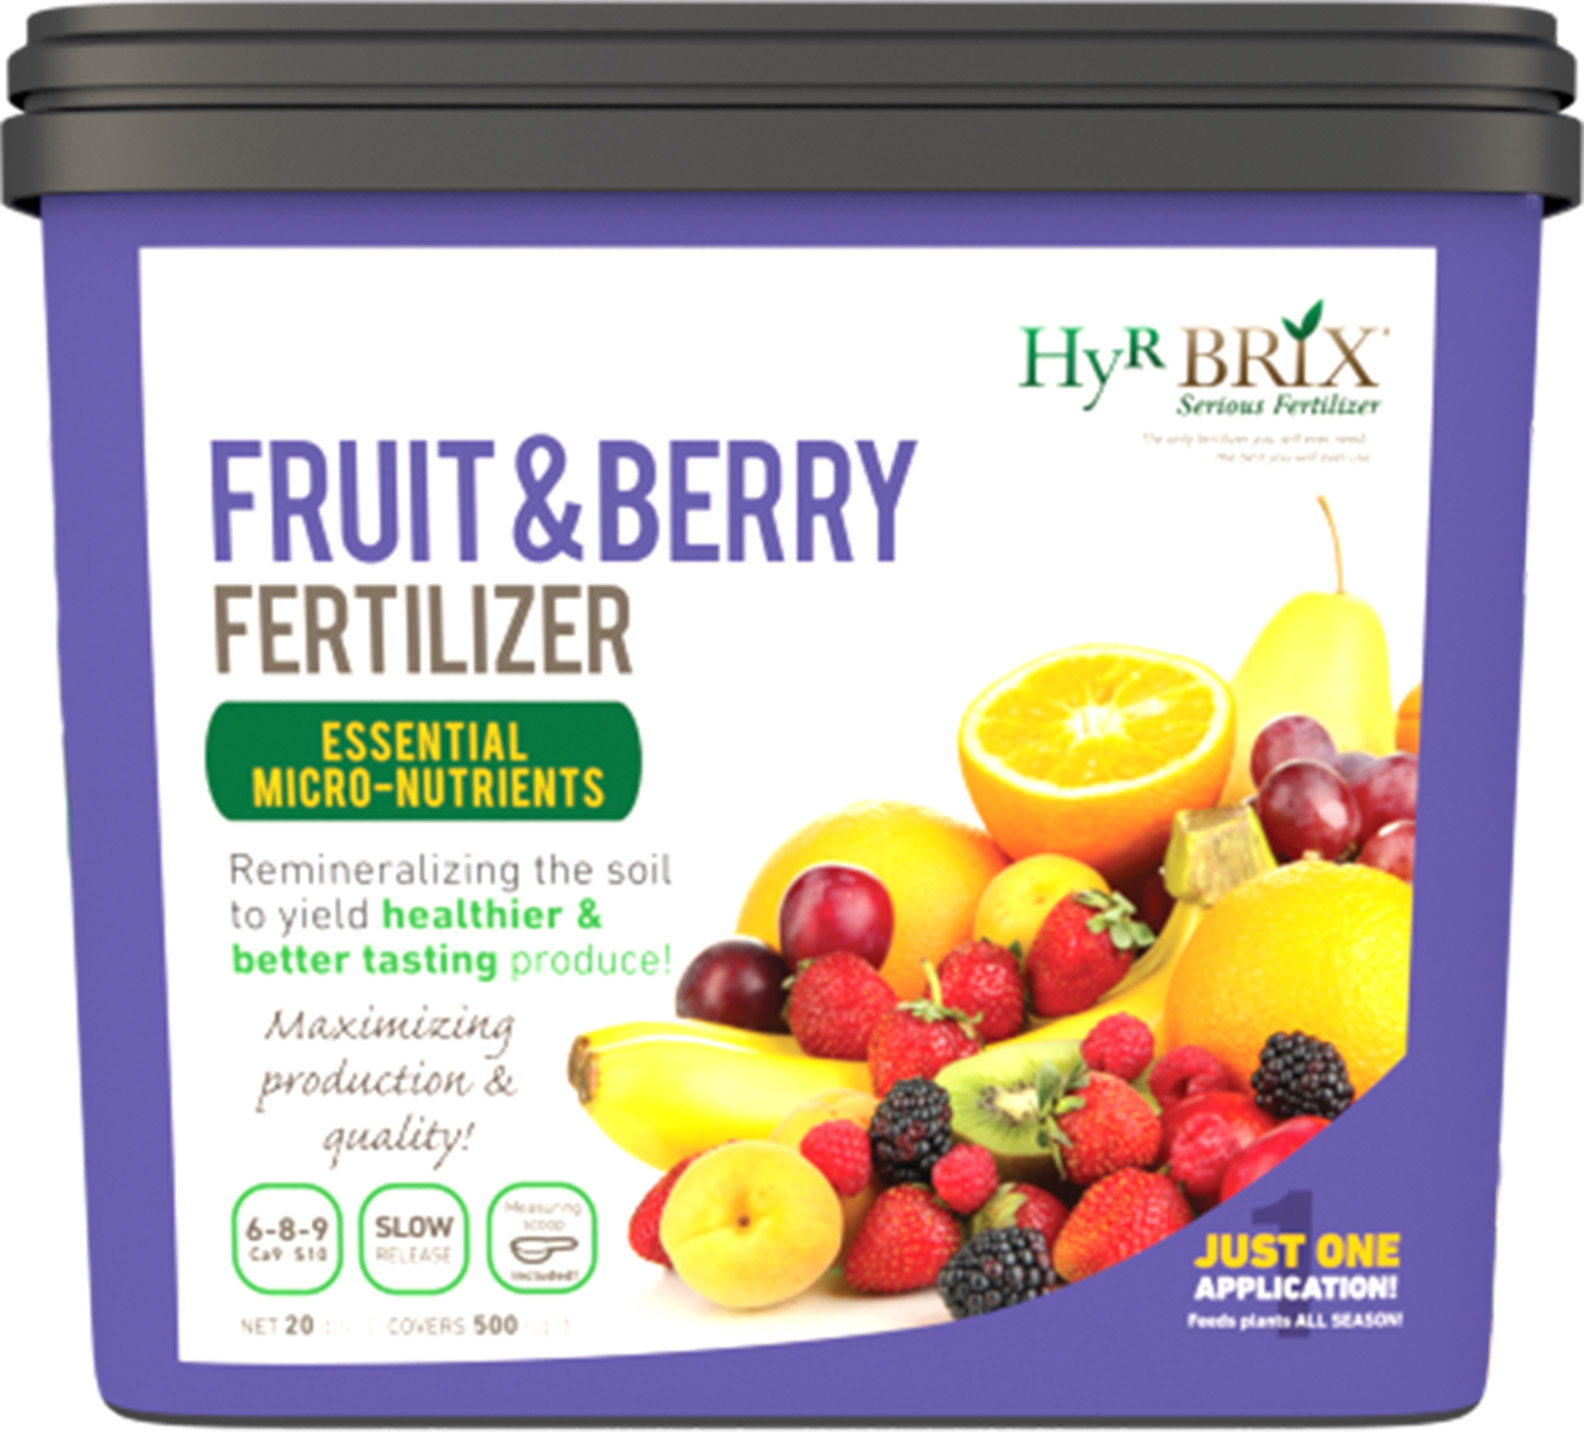 HyR Brix Fruit & Berry Fertilizer 6-8-9 Ca9 S10- 20 lb Pail - Fertilizers